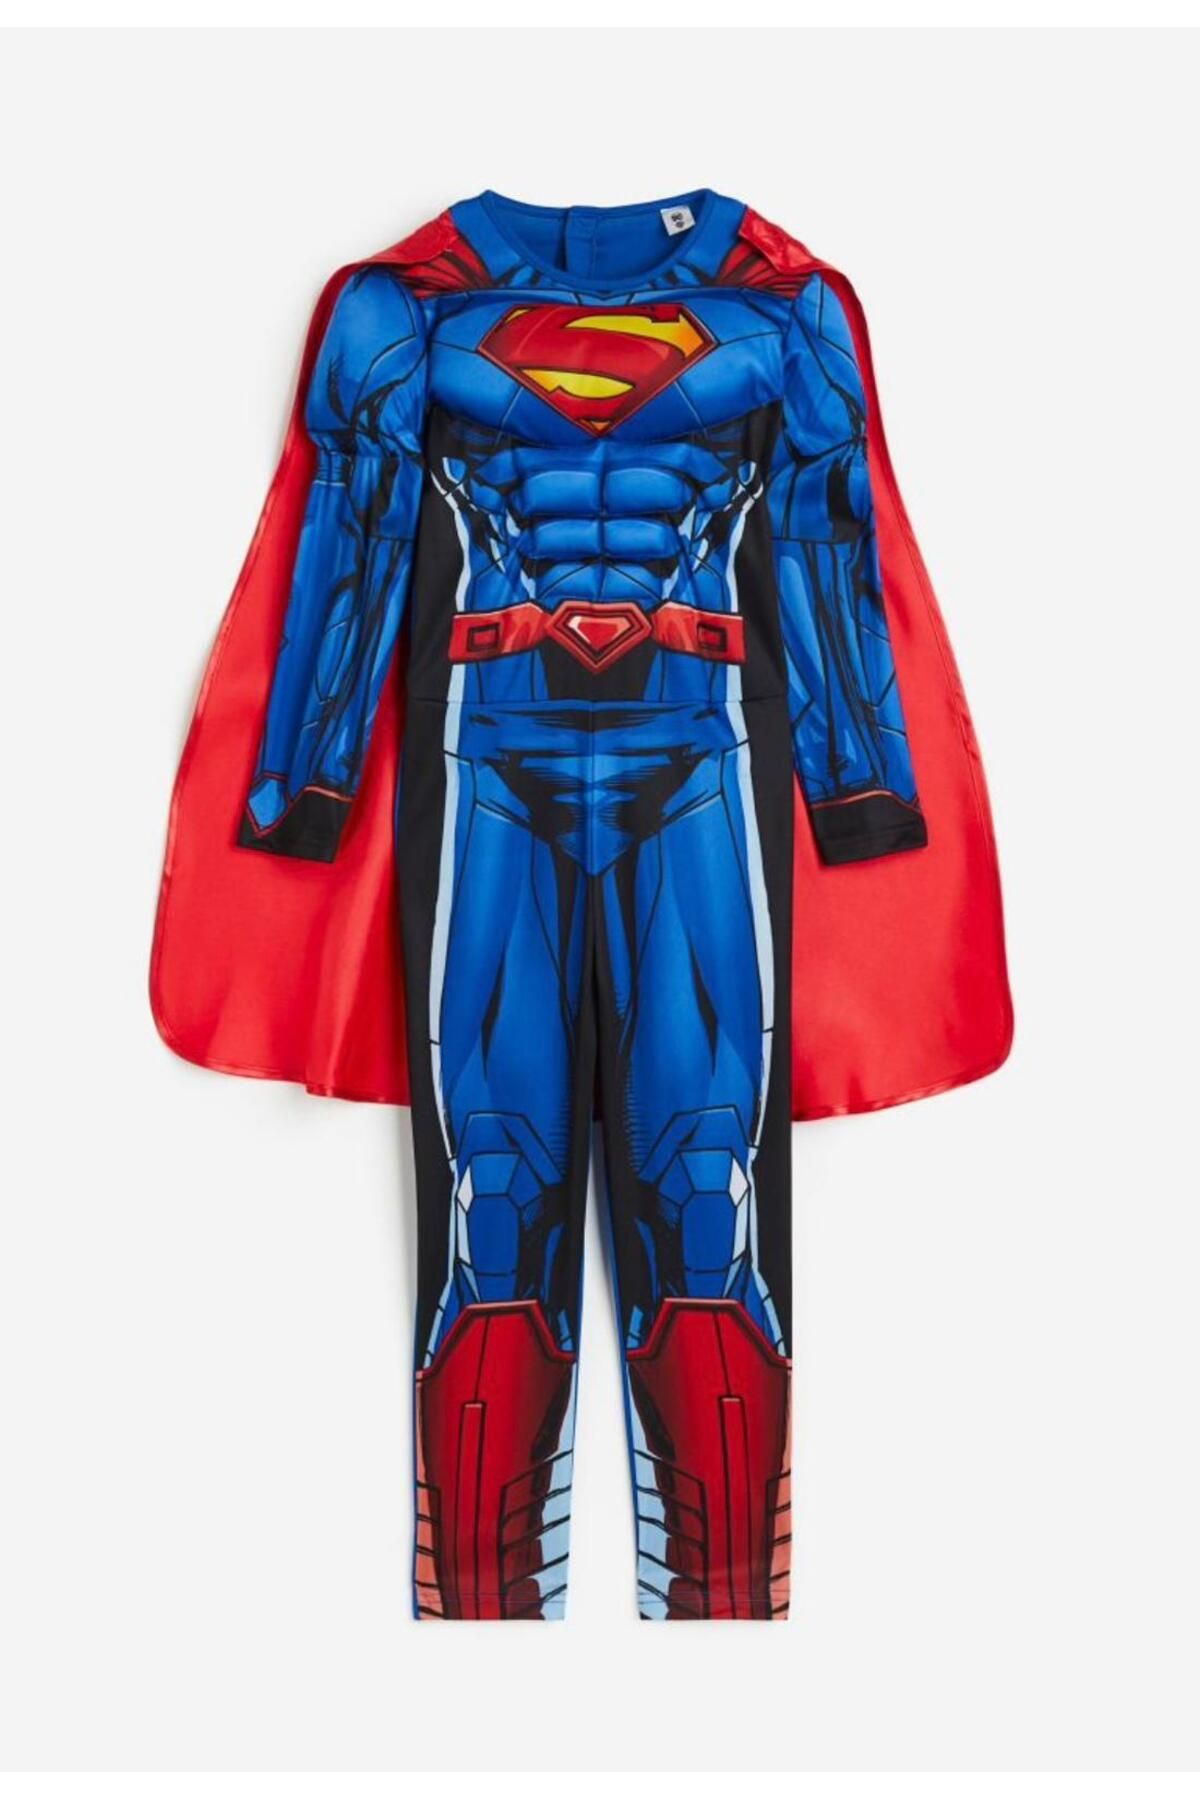 CİLLOP BUTİK Erkek Çocuk Süperman Kaslı Maskeli Pelerinli Kostüm